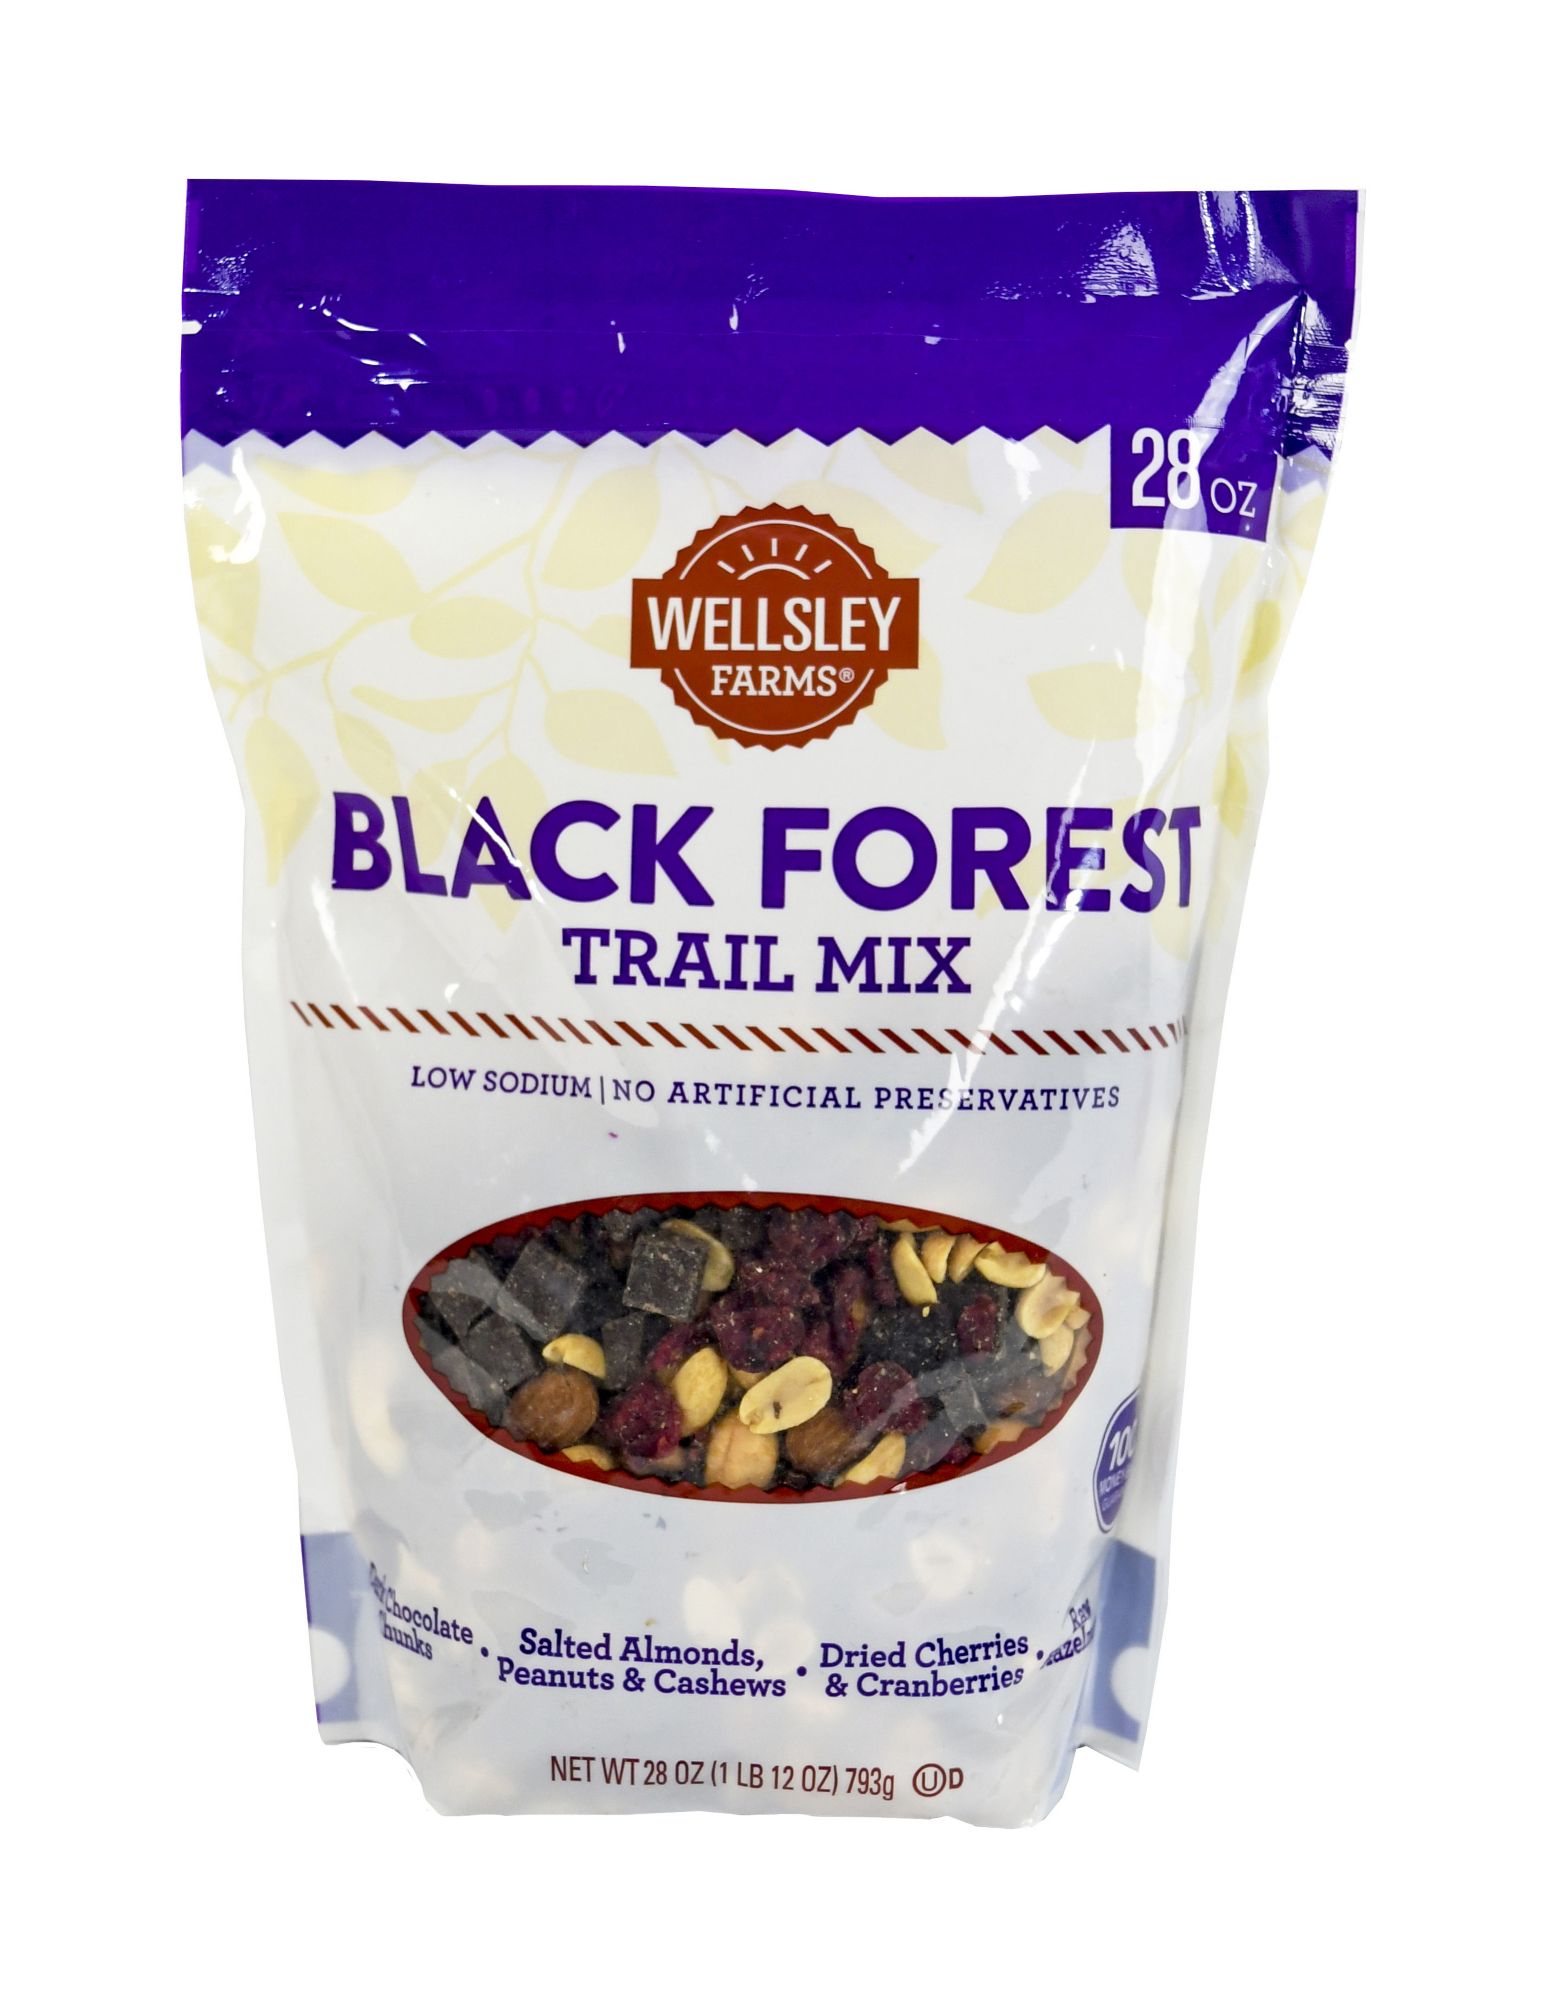 Wellsley Farms Black Forest Trail Mix, 28 oz.